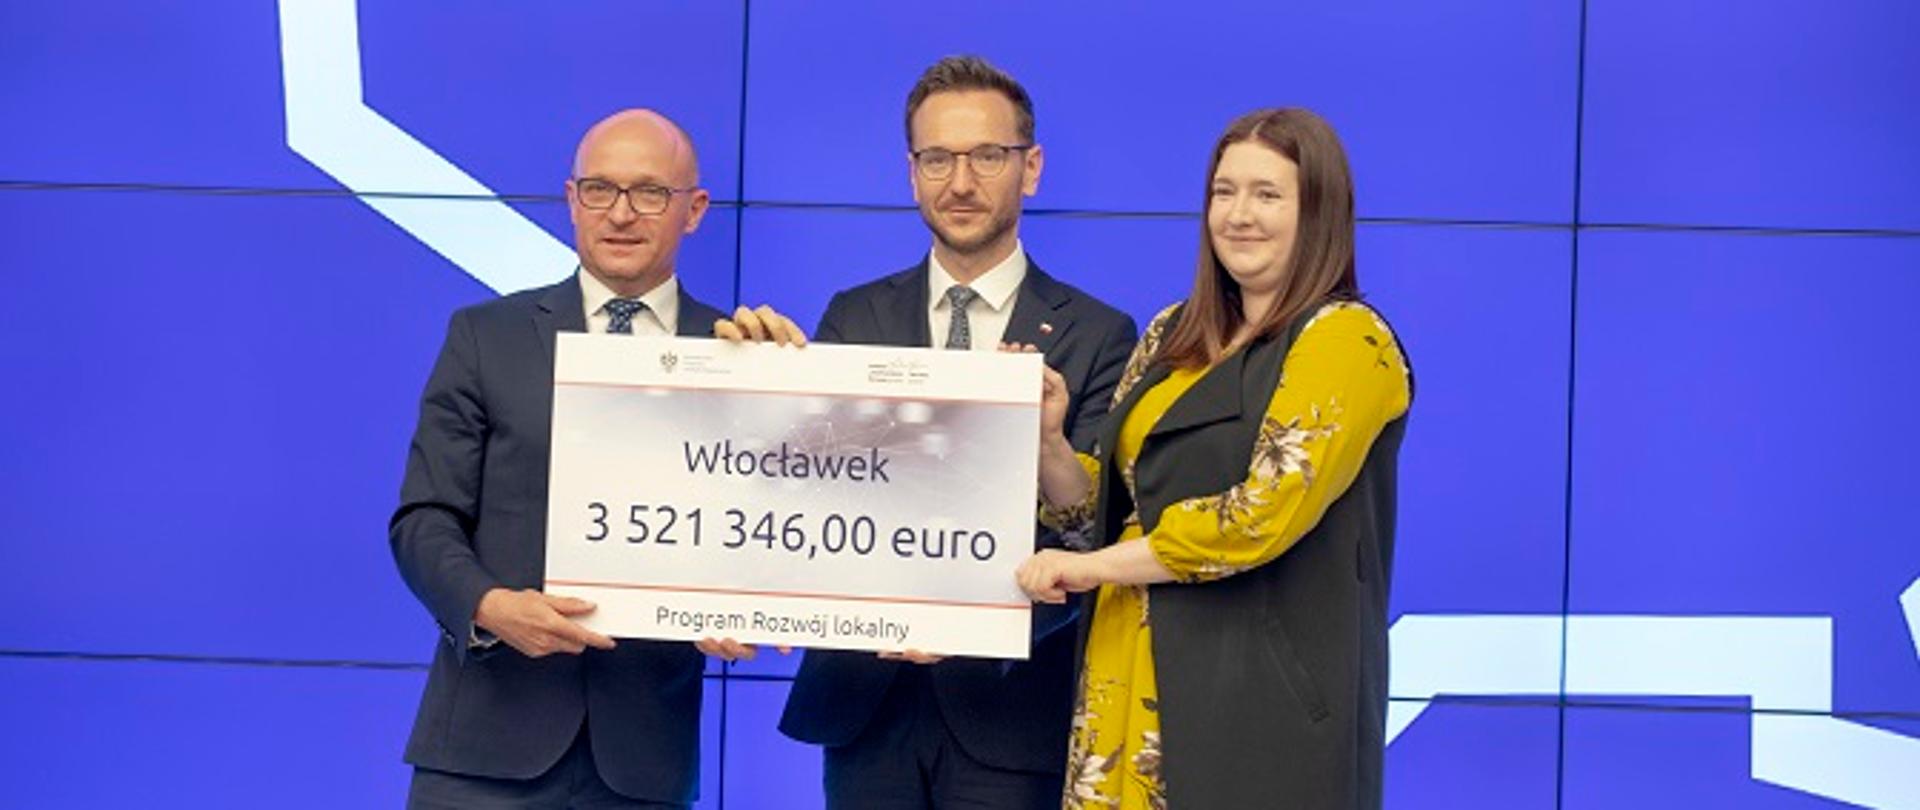 Na zdjęciu od lewej prezydent Włocławka Marek Wojtkowski, wiceminister Waldemar Buda, wiceminister Anna Gembicka. Wszyscy trzymają w rękach planszę z napisem Włocławek, 3 521 346,00 euro.
